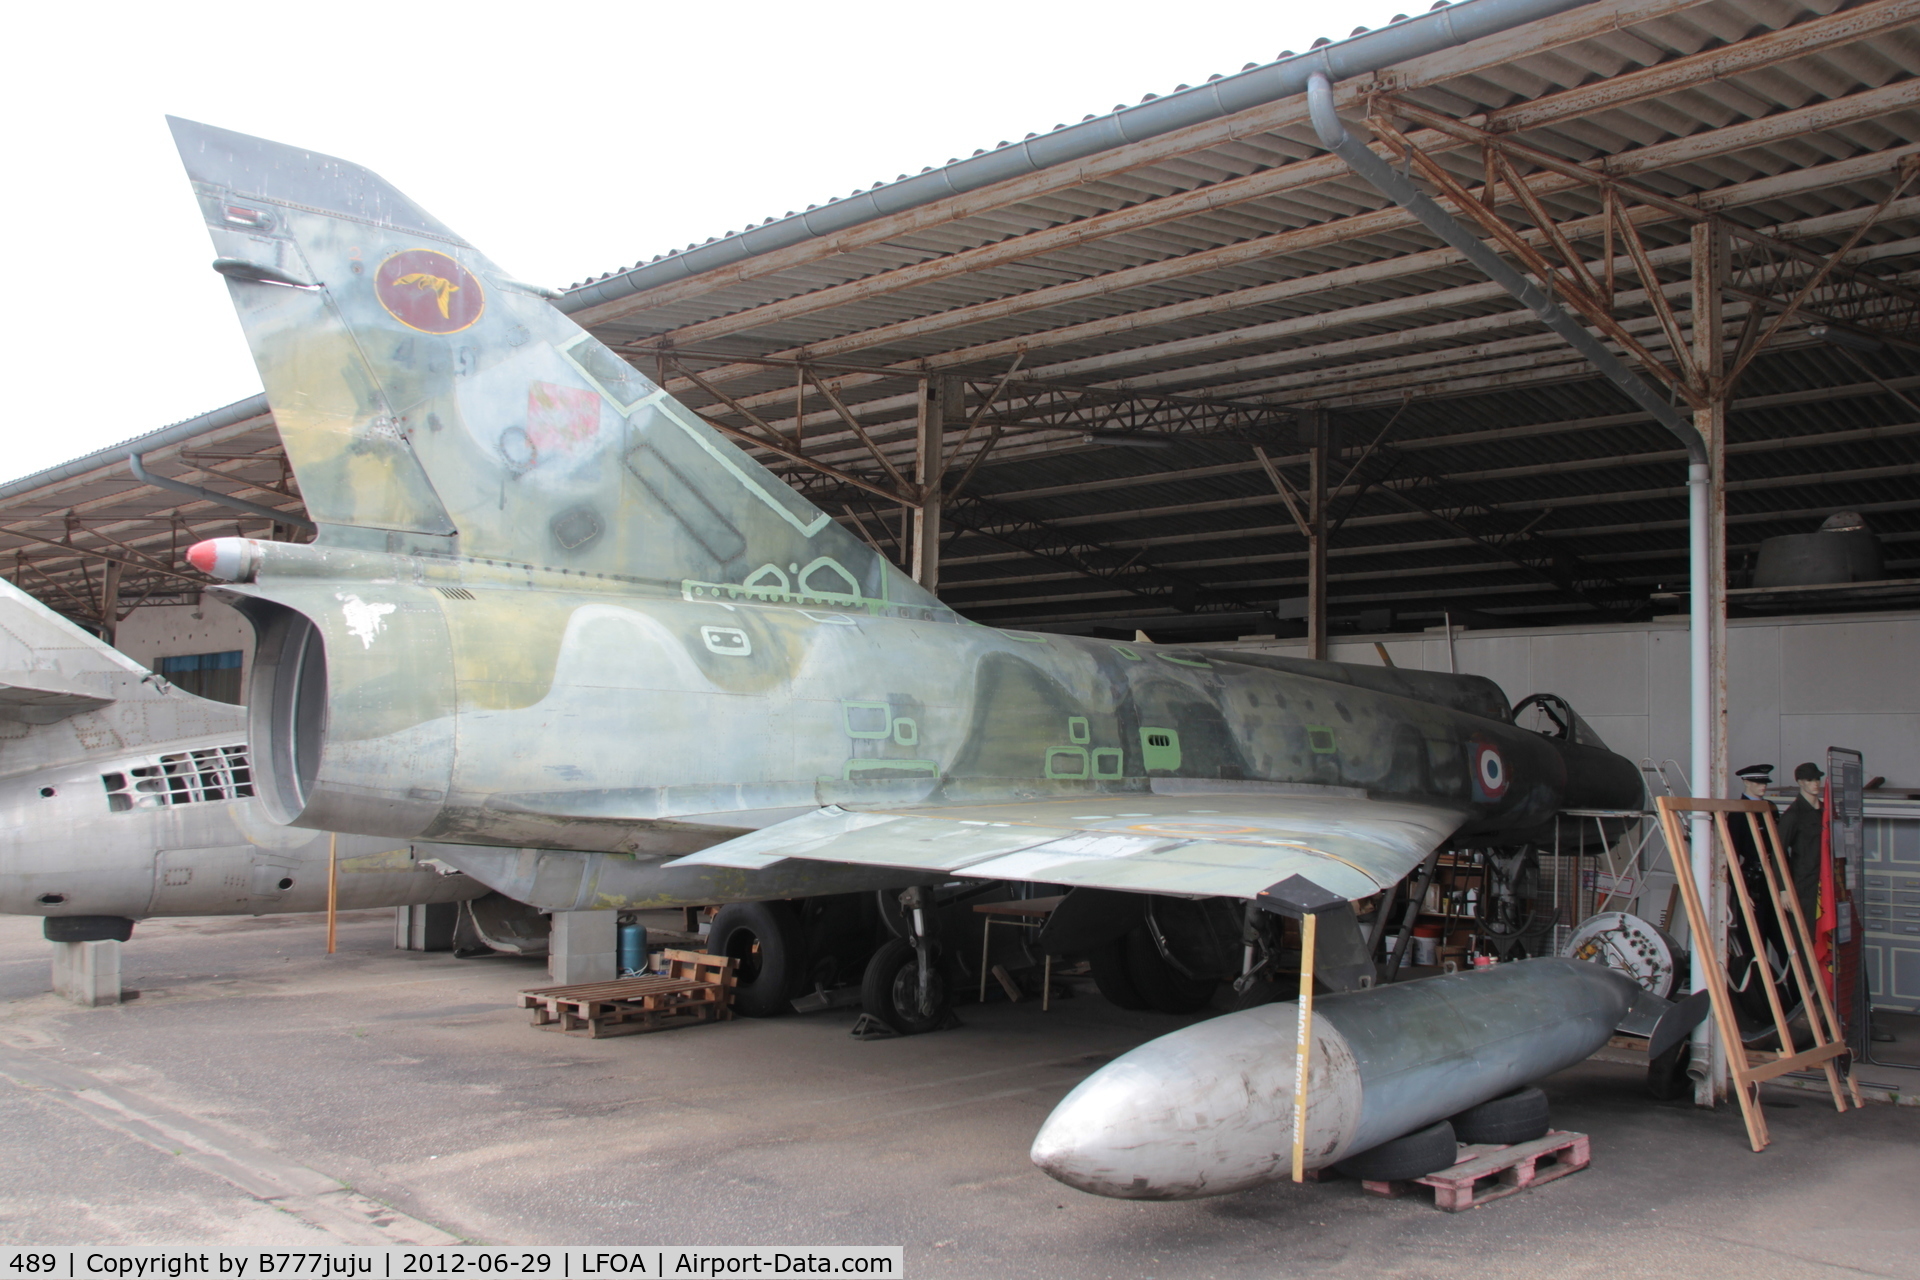 489, Dassault Mirage IIIE C/N 489, on restoration